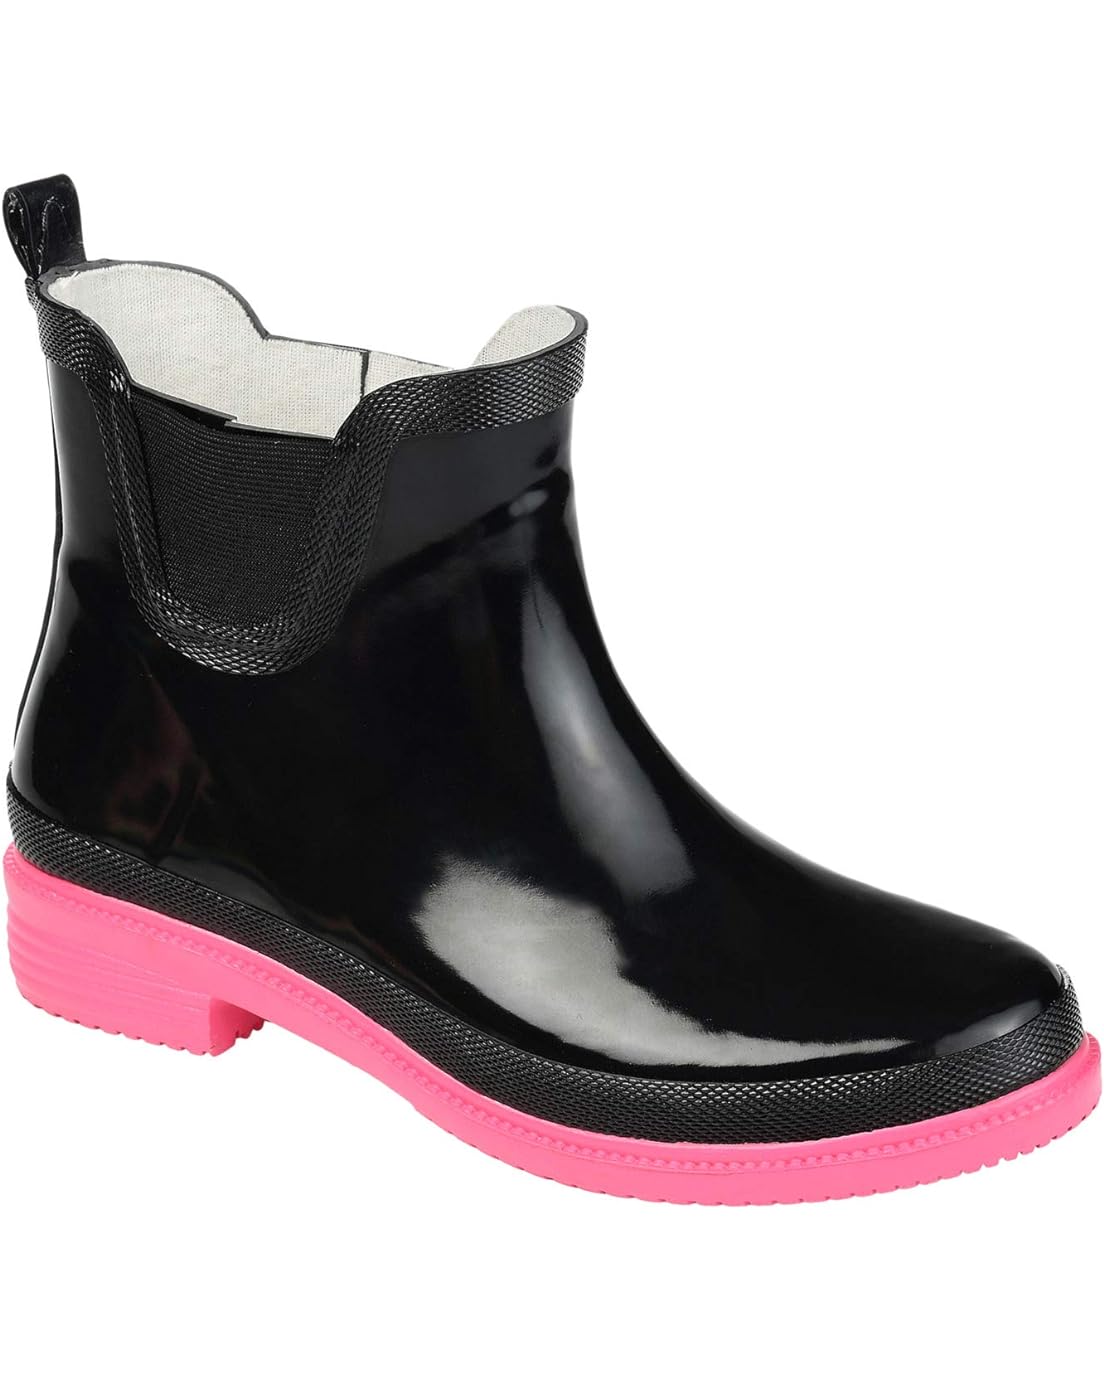 Journee Collection Tekoa Rain Boot